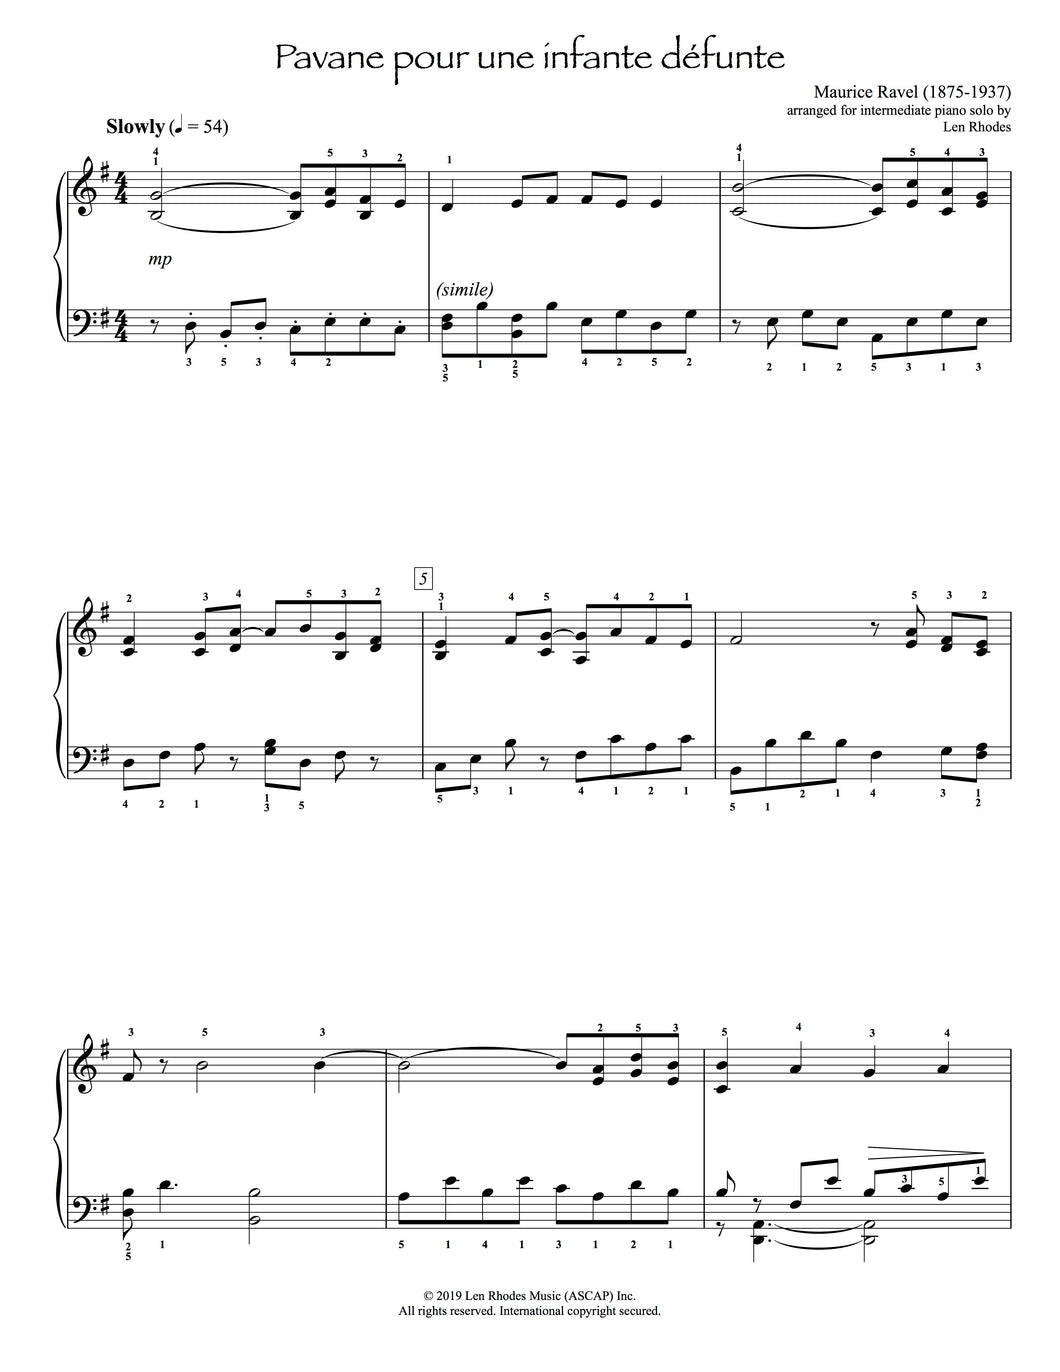 Pavane pour une enfante défunte, Ravel - intermediate Piano